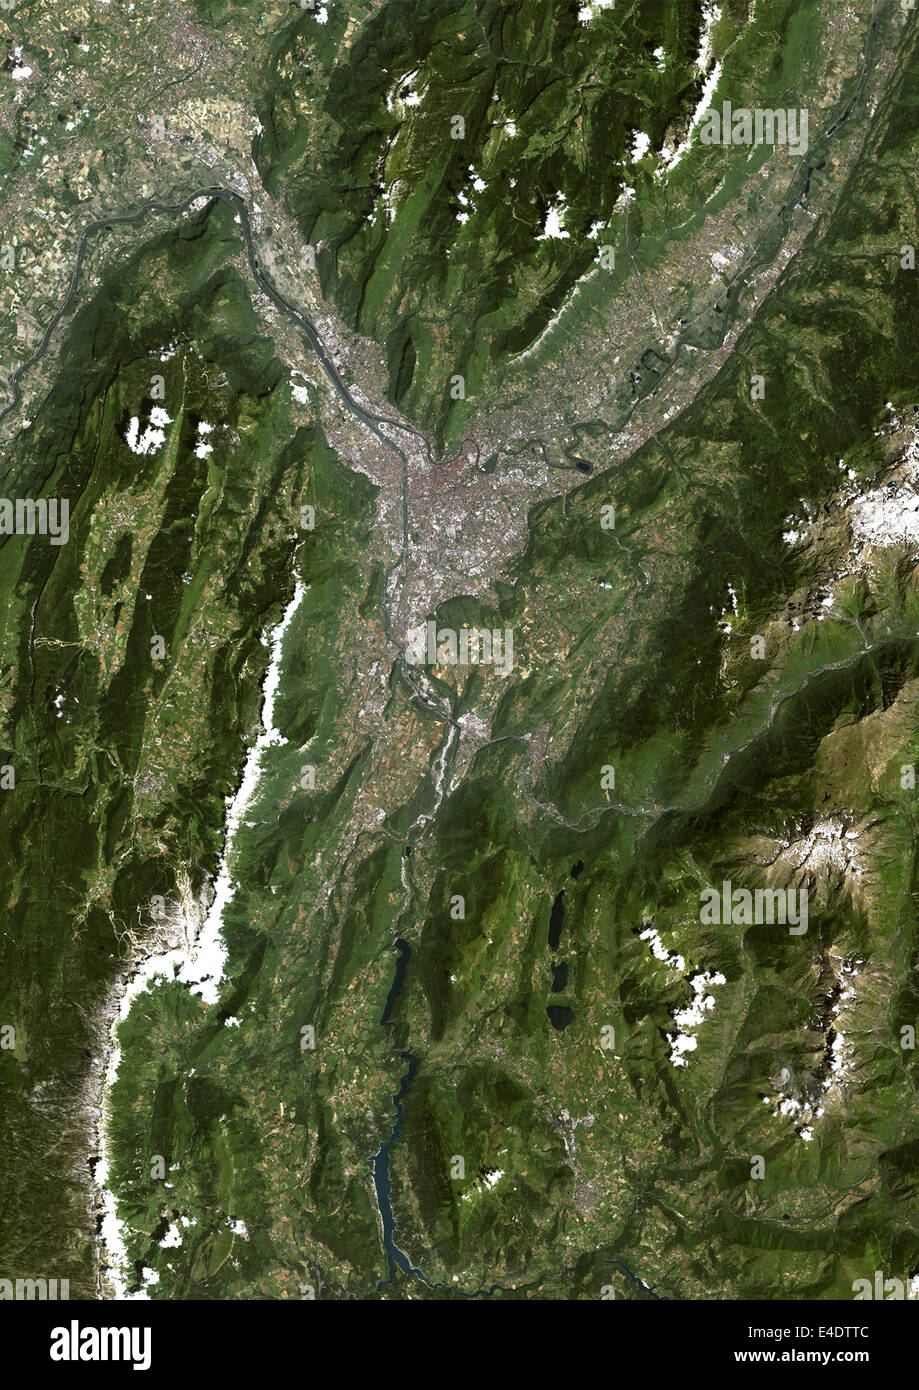 Grenoble, Frankreich, Echtfarben-Satellitenbild. Grenoble, Frankreich. Echtfarben-Satellitenbild der Stadt Grenoble, aufgenommen am 2 Stockfoto